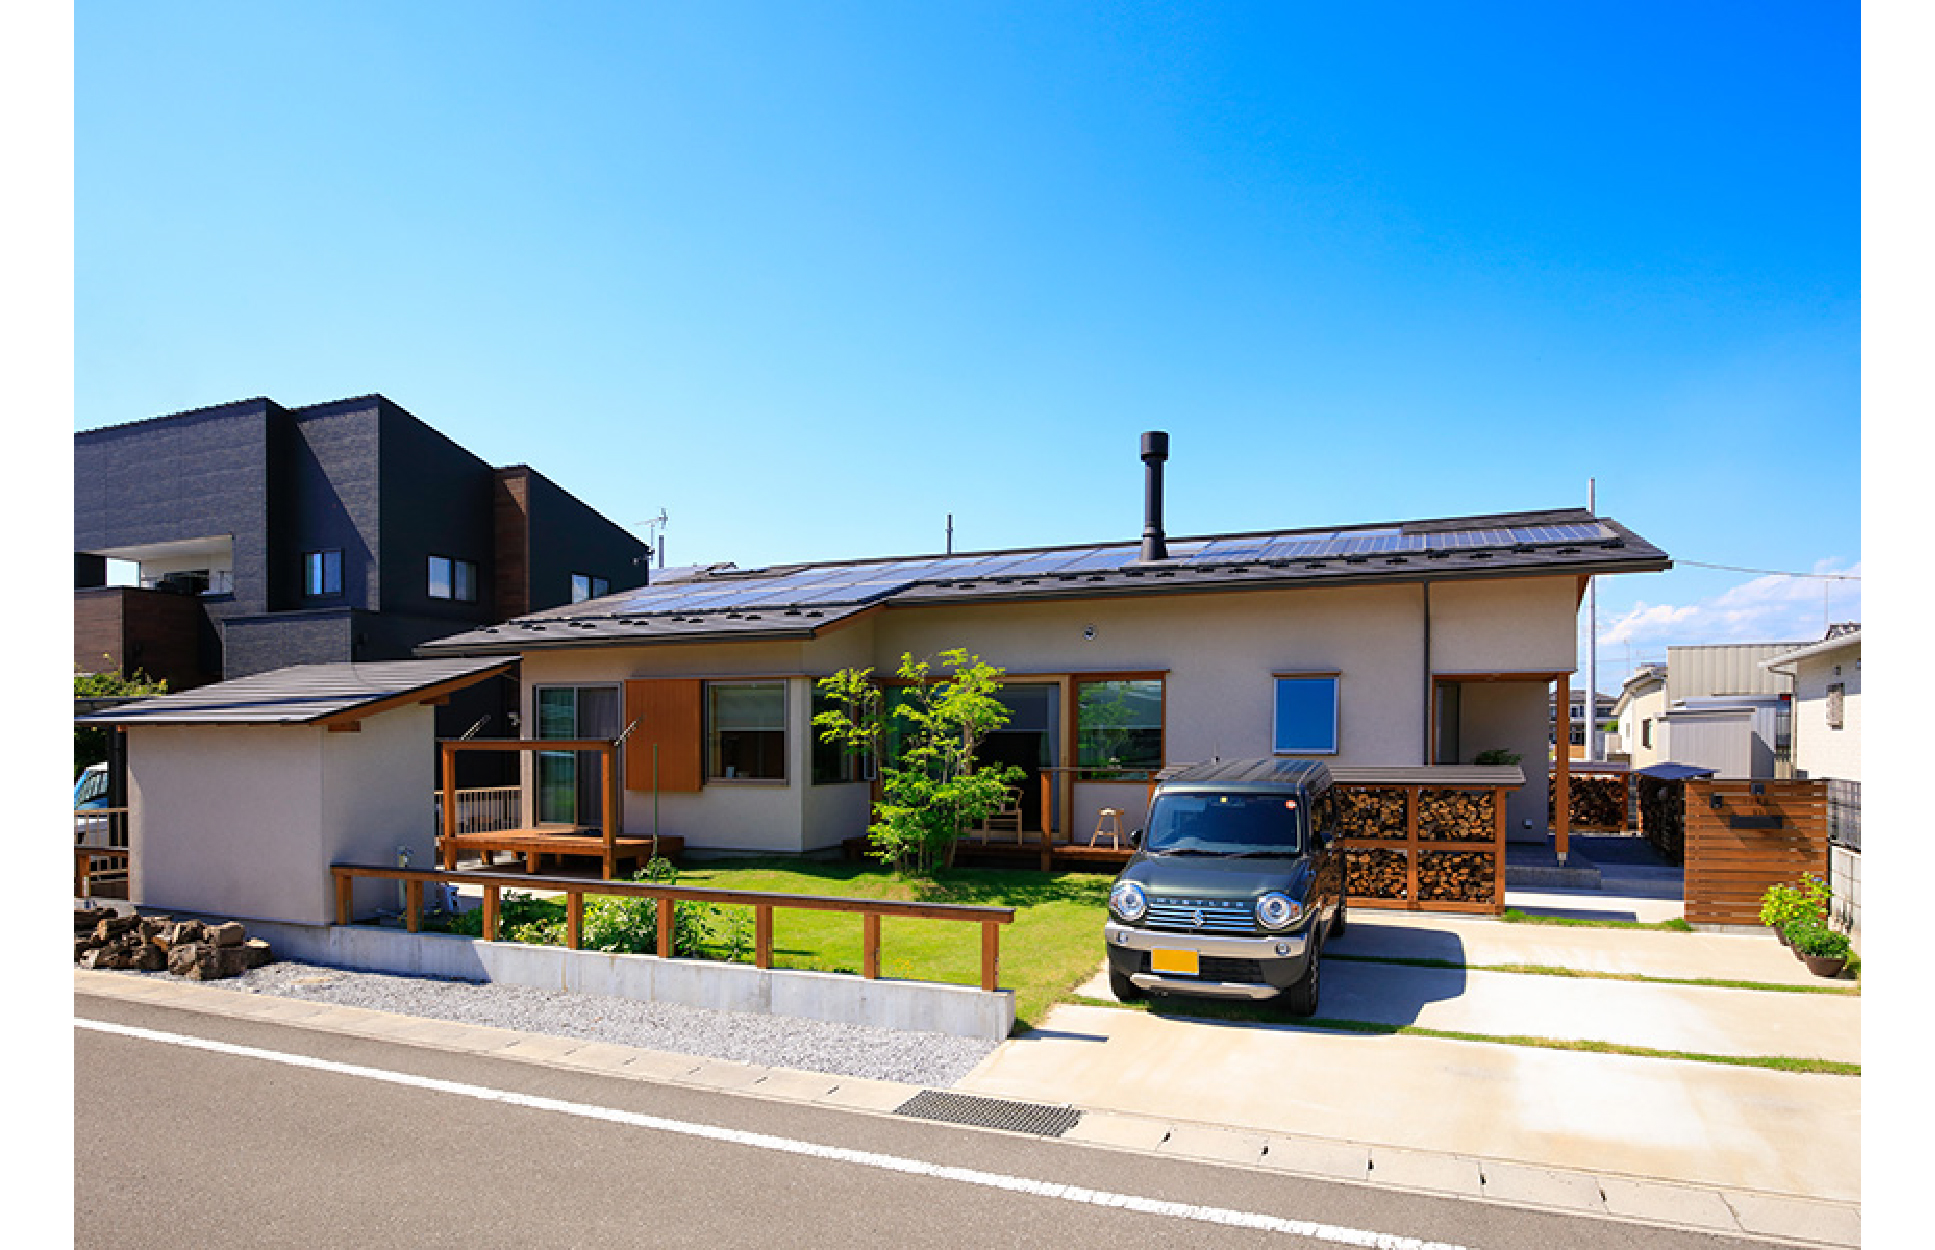 群馬県邑楽郡邑楽町に家の中心に薪ストーブのある暖かい注文住宅の”木の家”が建ちました。